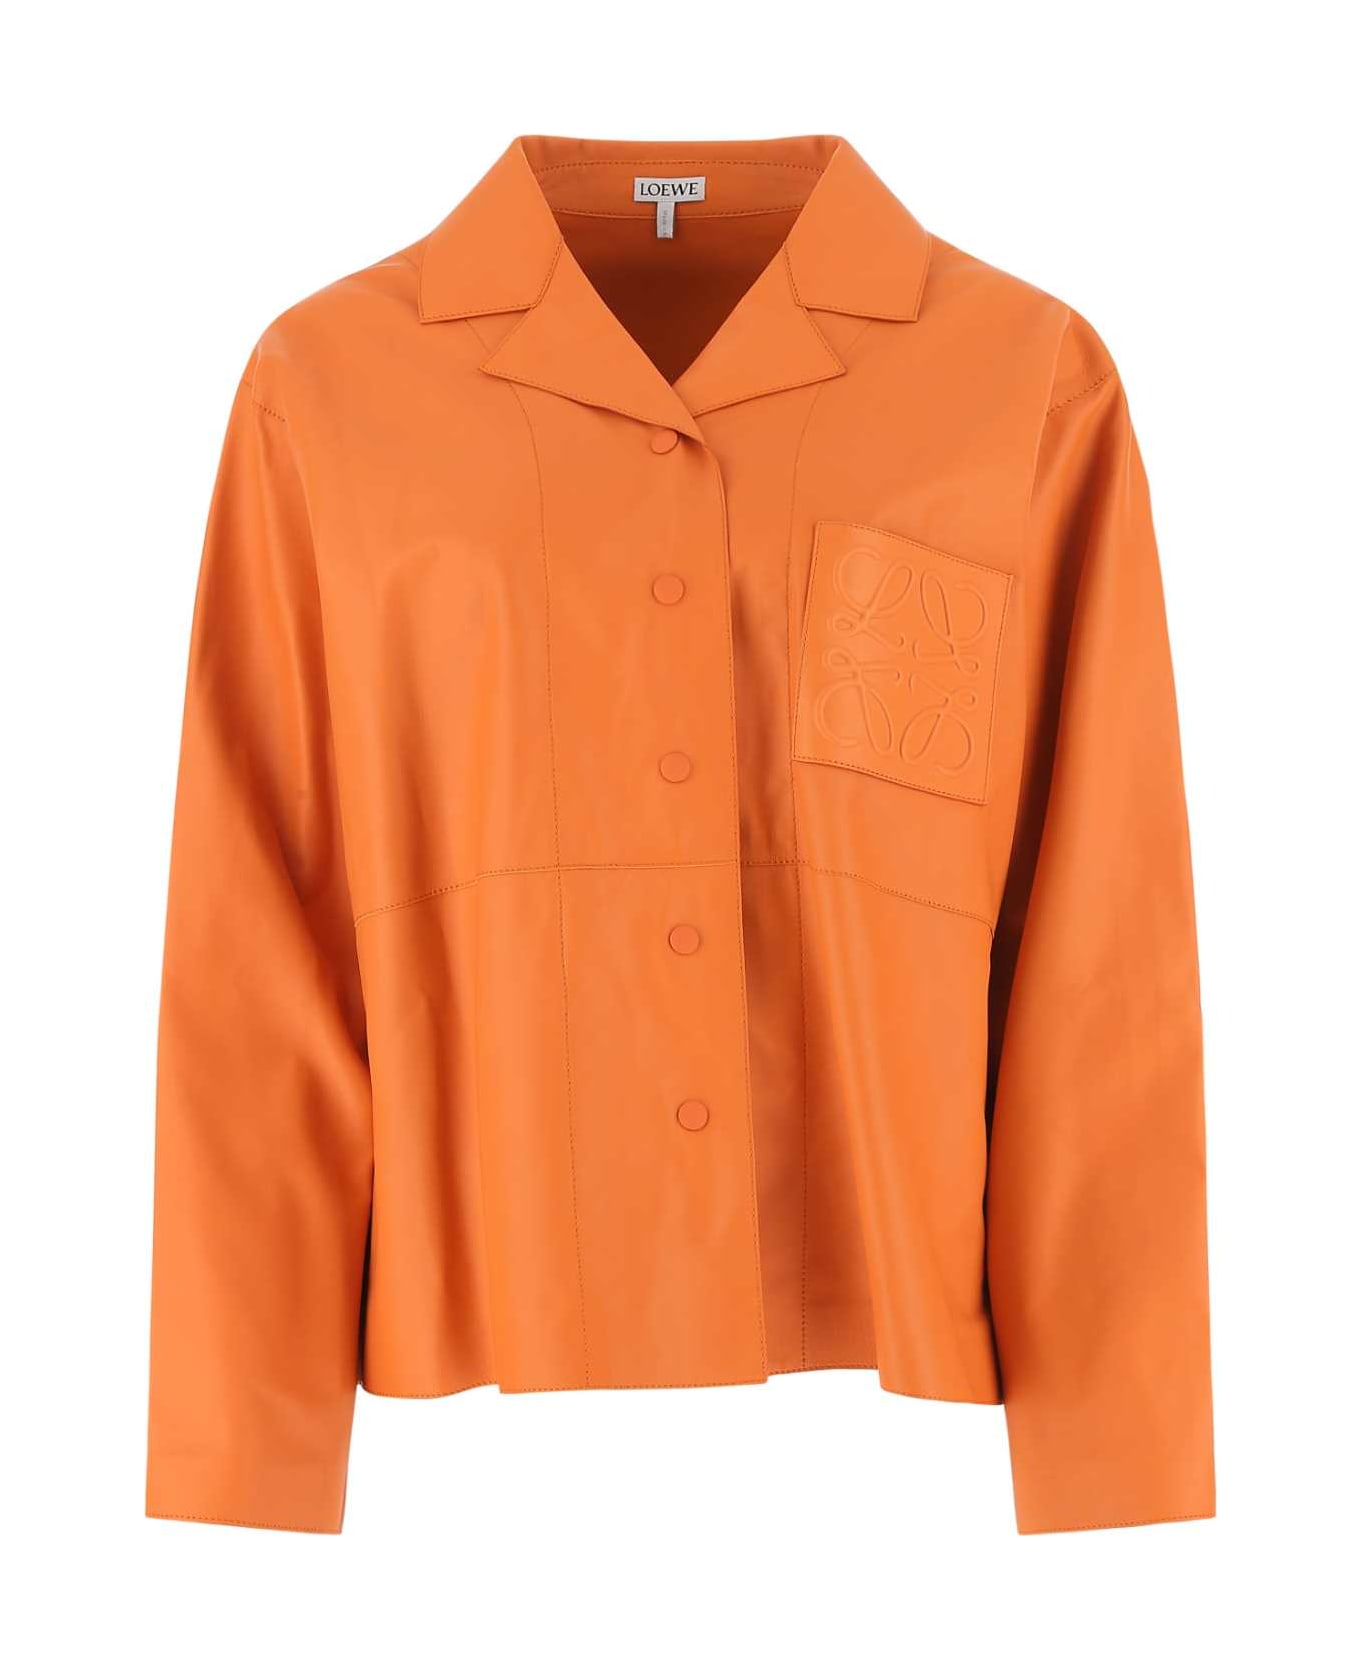 Loewe Orange Leather Oversize Shirt - ORANGE